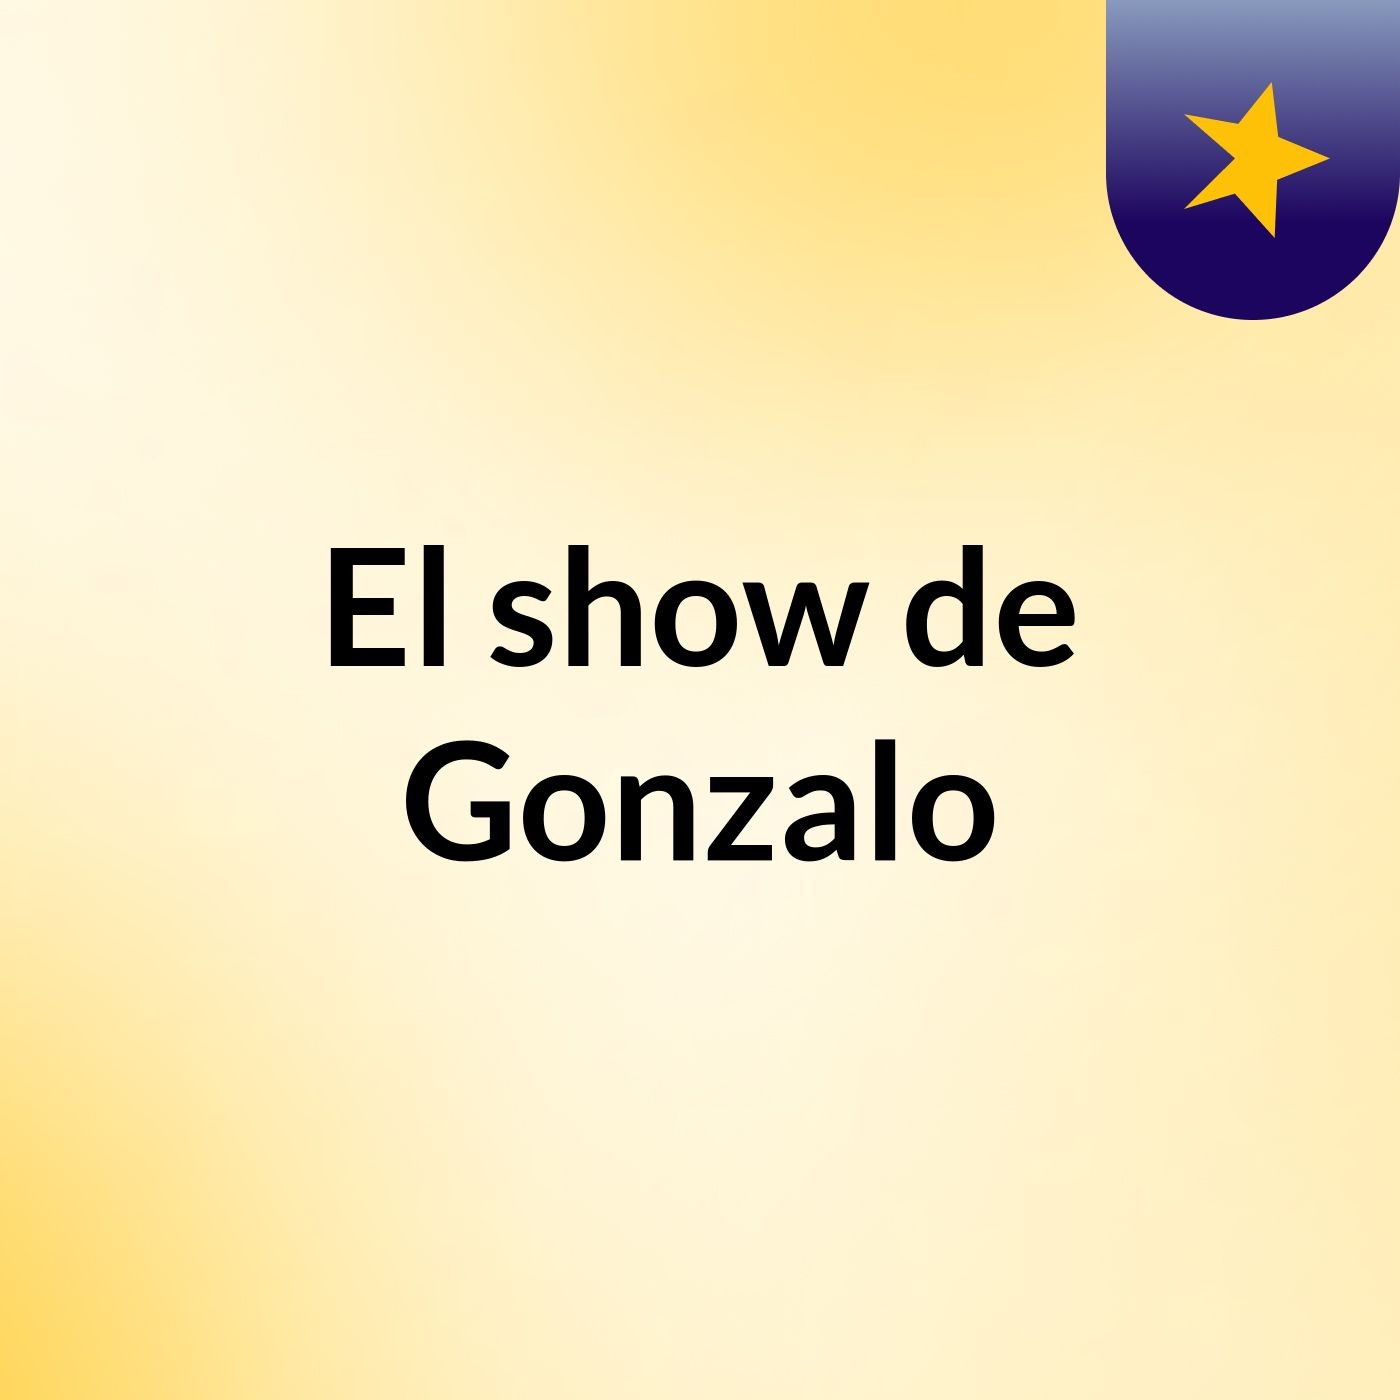 Episodio 1 - El show de Gonzalo